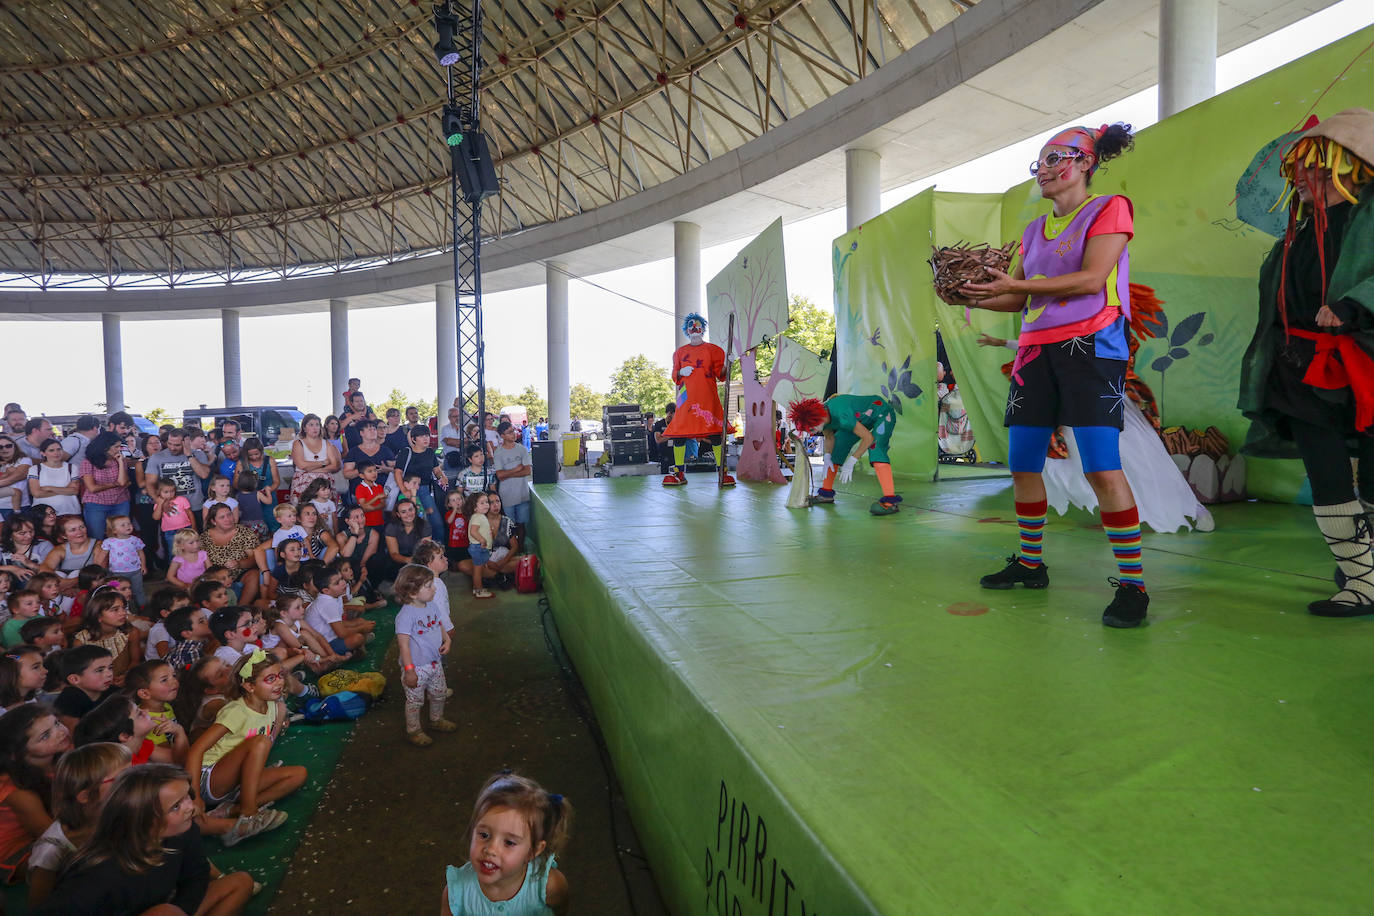 La cúpula del Buesa Arena ha acogido este este sábado una gran fiesta infantil al aire libre organizada por la Corporación Mondragón como aperitivo de su espectáculo 'Humanity at Music', que comienza a las 18.00 en el interior del pabellón.